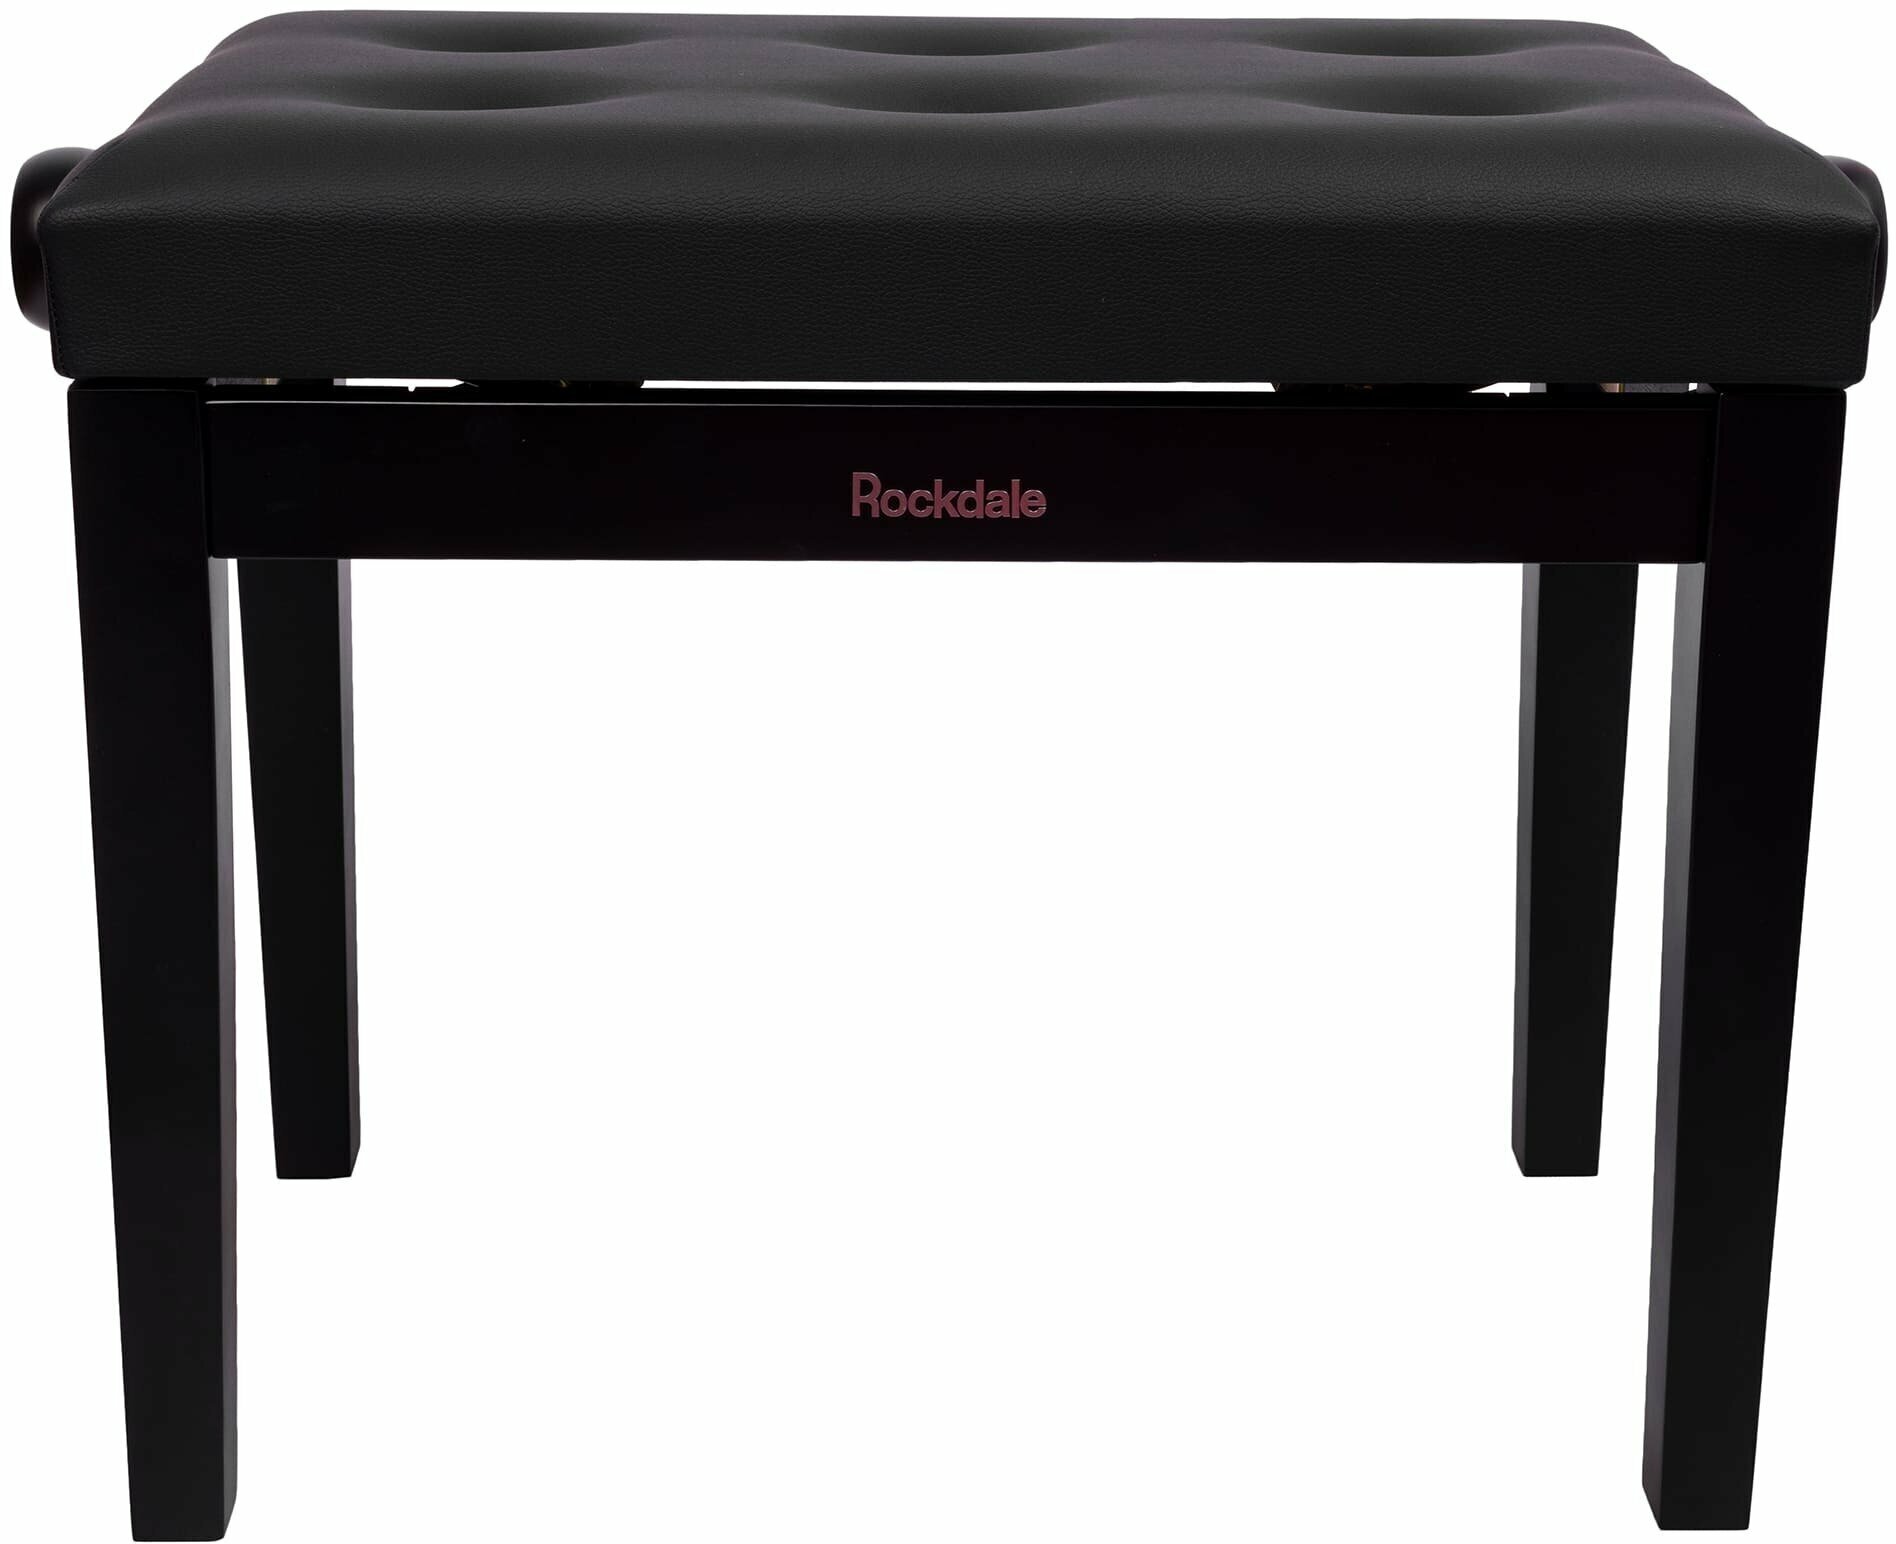 Rockdale Rhapsody 130 Black банкетка с регулировкой высоты от 47 до 56 см цвет черный